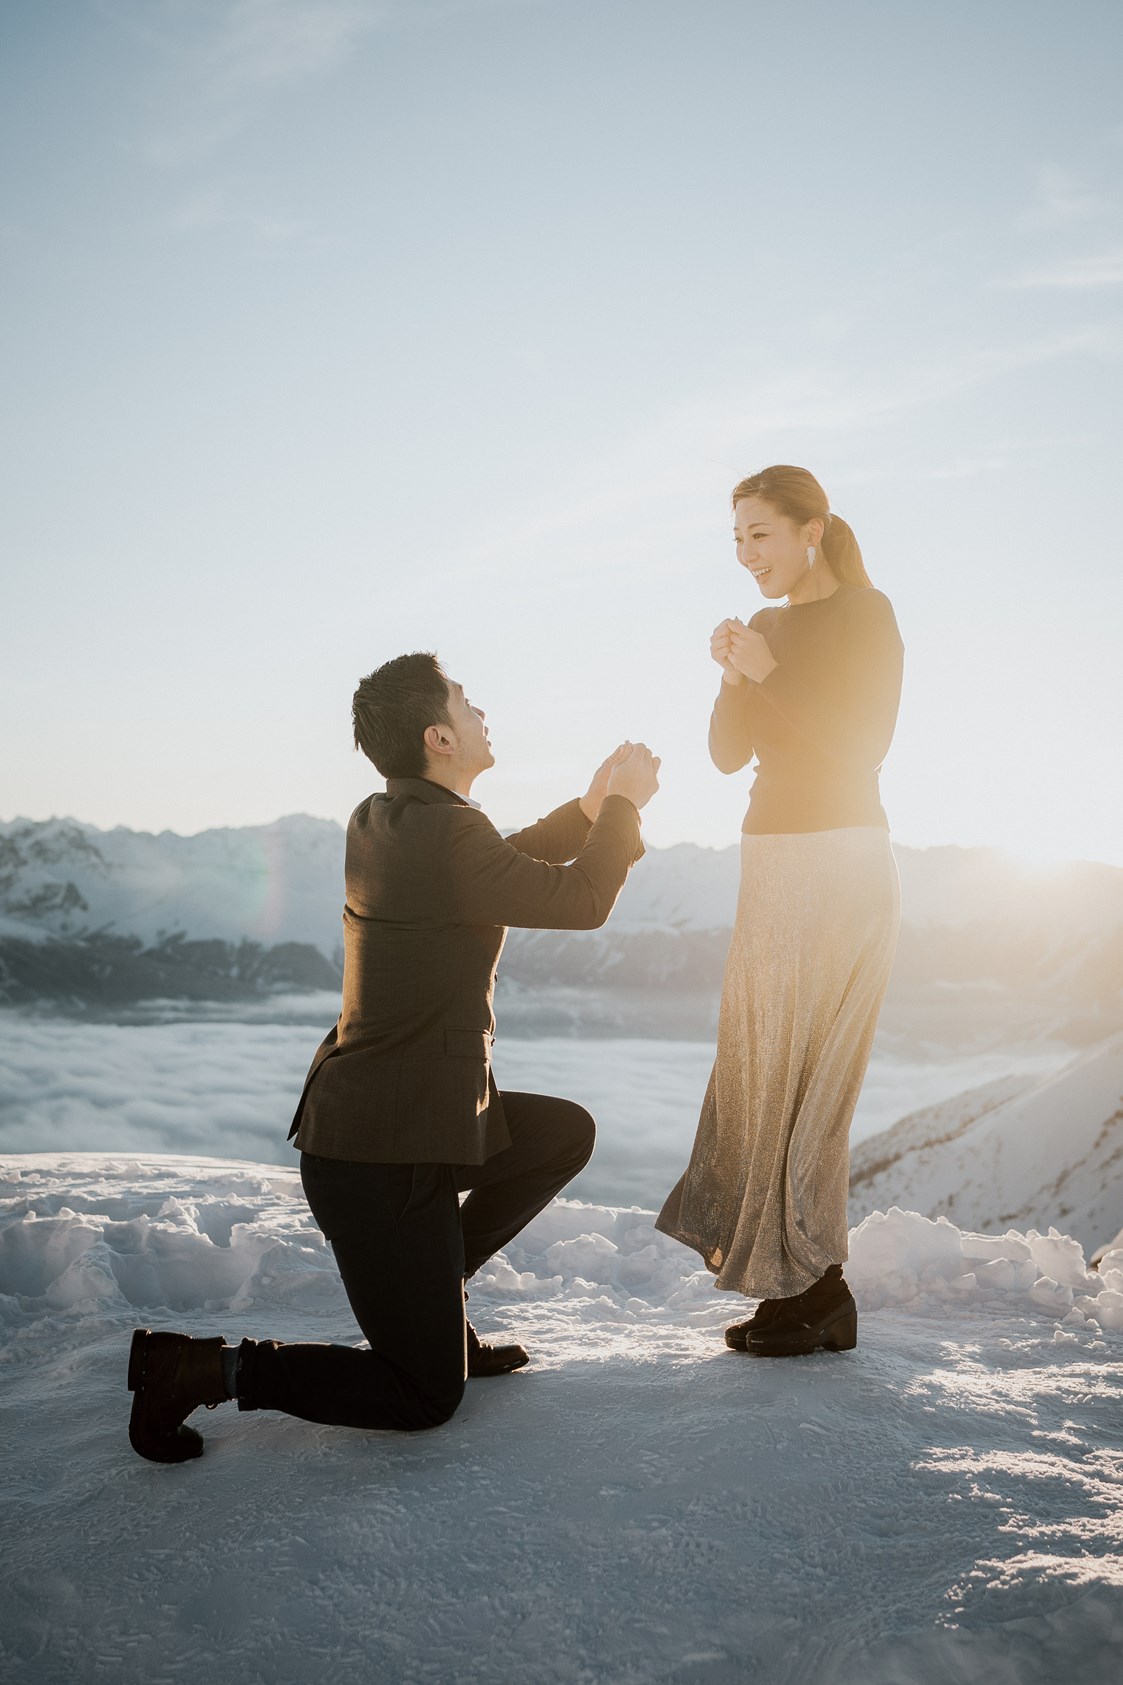 Hochzeitsfotograf: Heiratsantrag über Innsbruck - Blitzkneisser